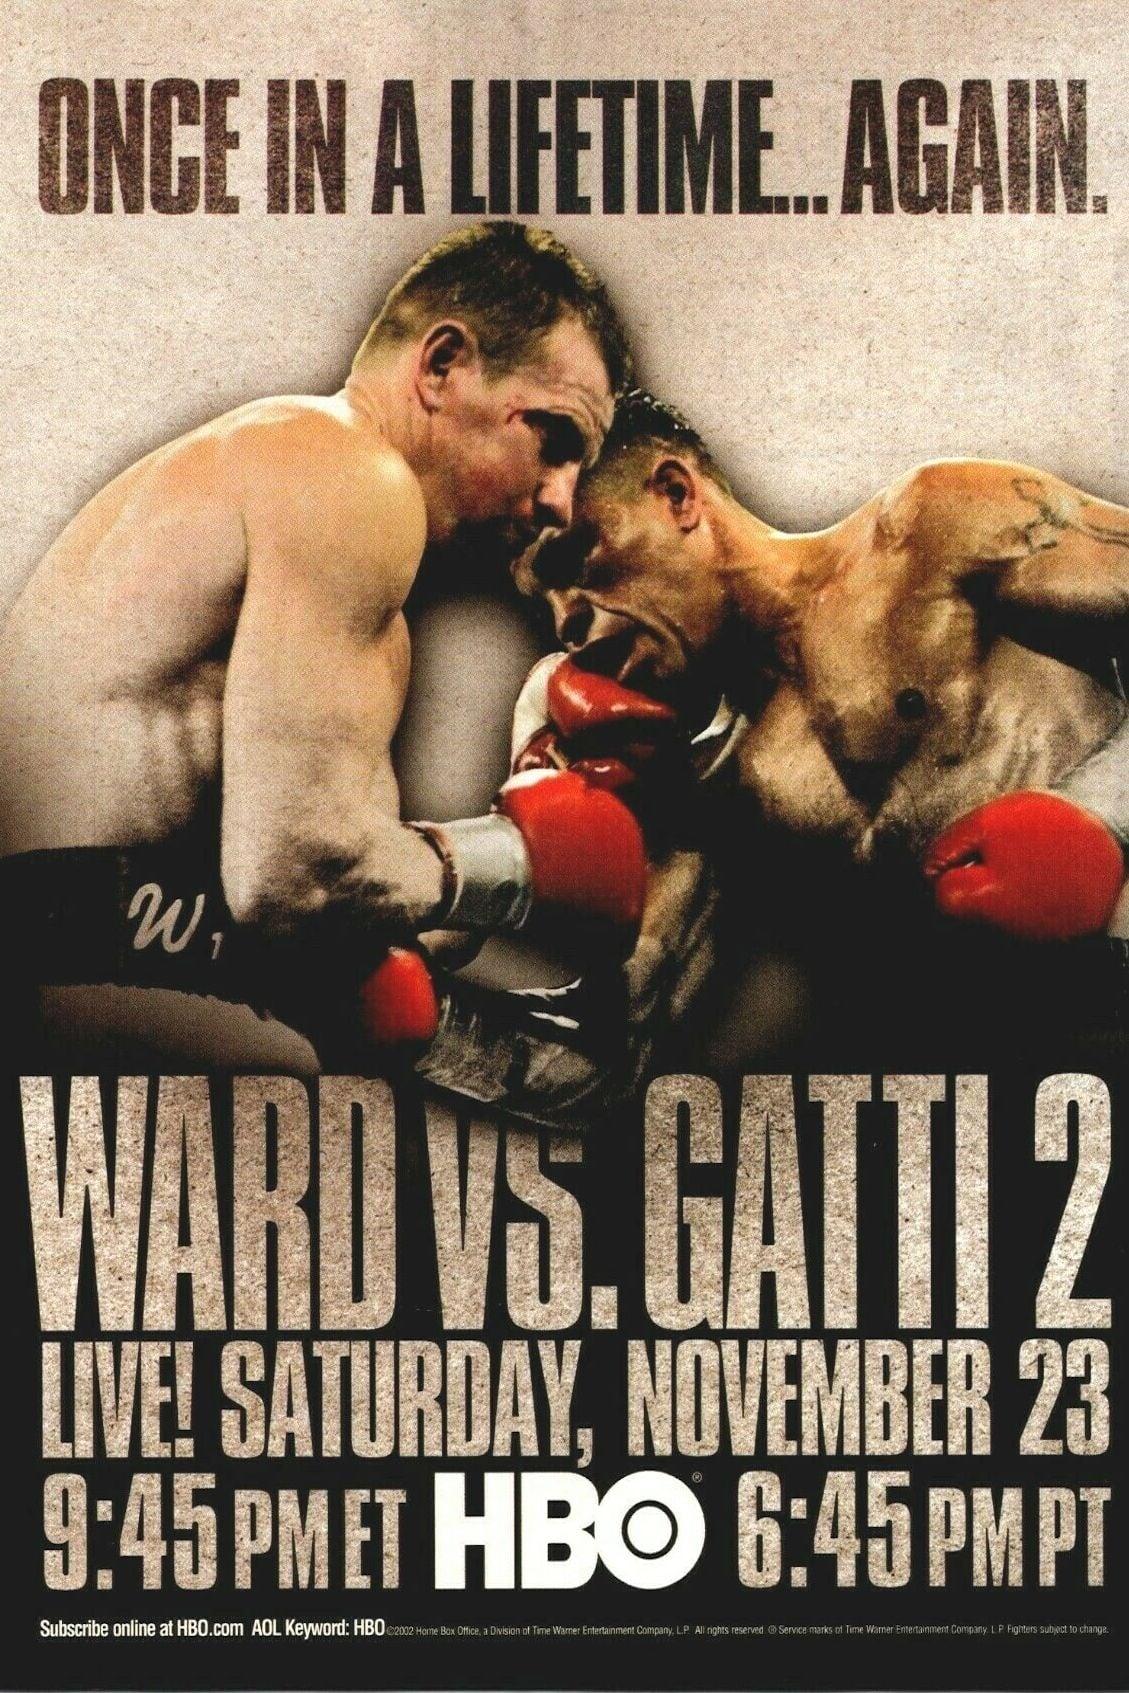 Arturo Gatti vs. Micky Ward II poster